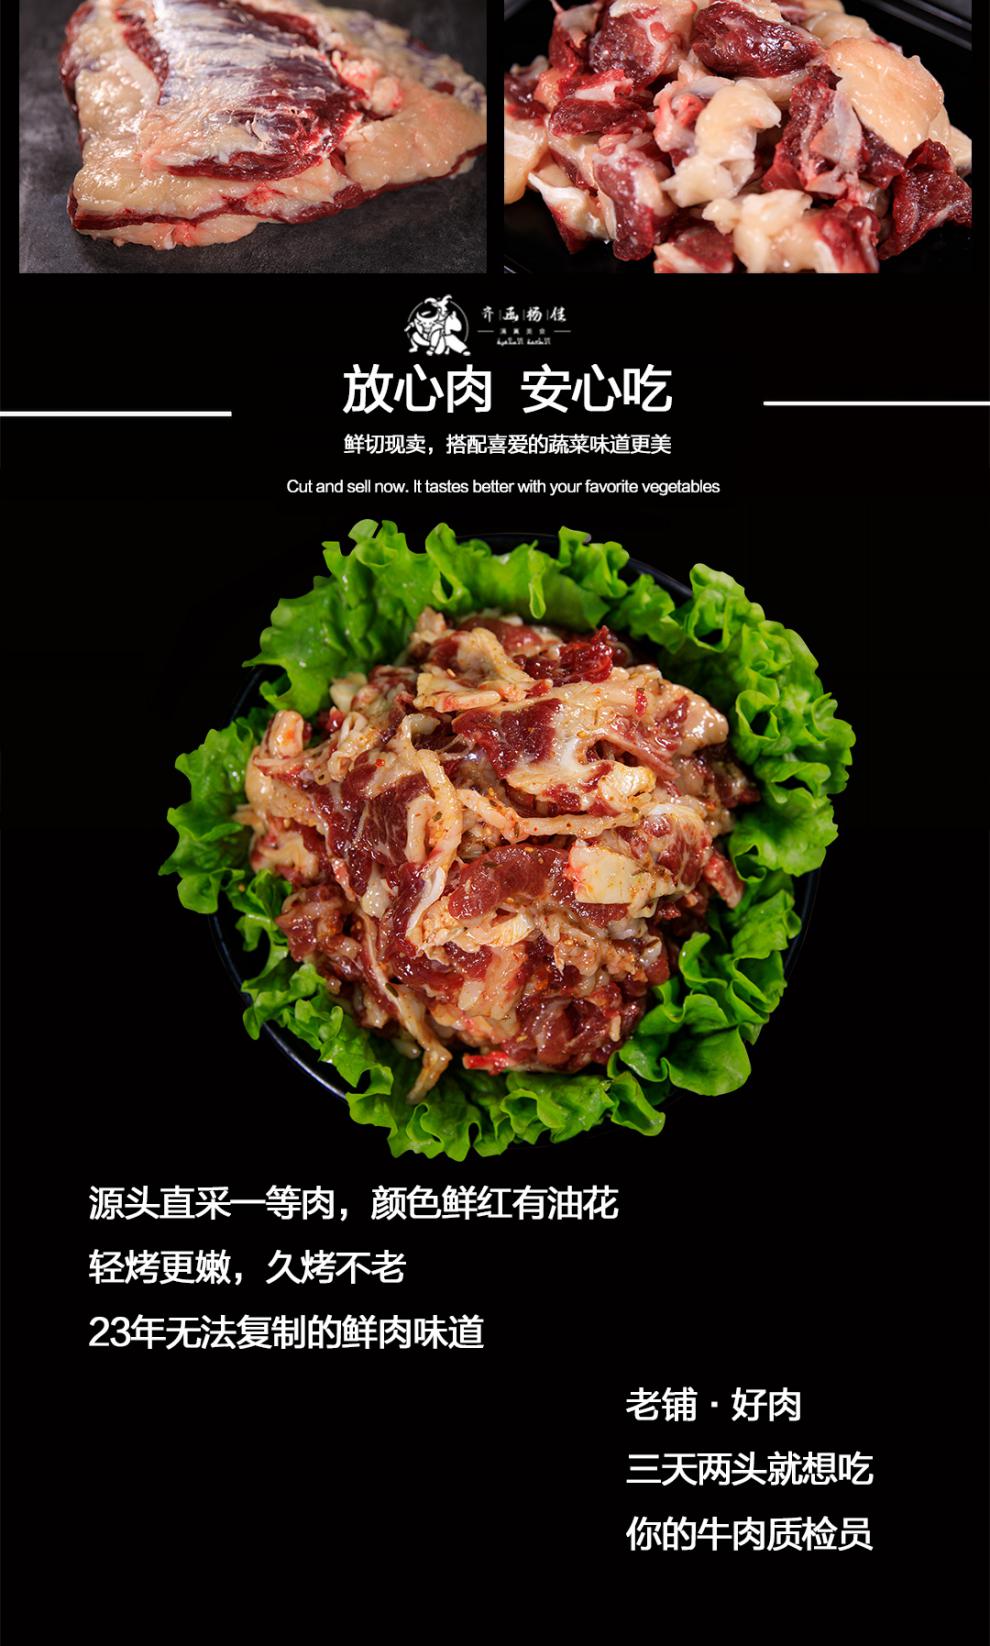 齐函杨佳牛燕翅2斤东北特色齐齐哈尔烤肉牛燕翅新鲜牛肉韩式烧烤食材